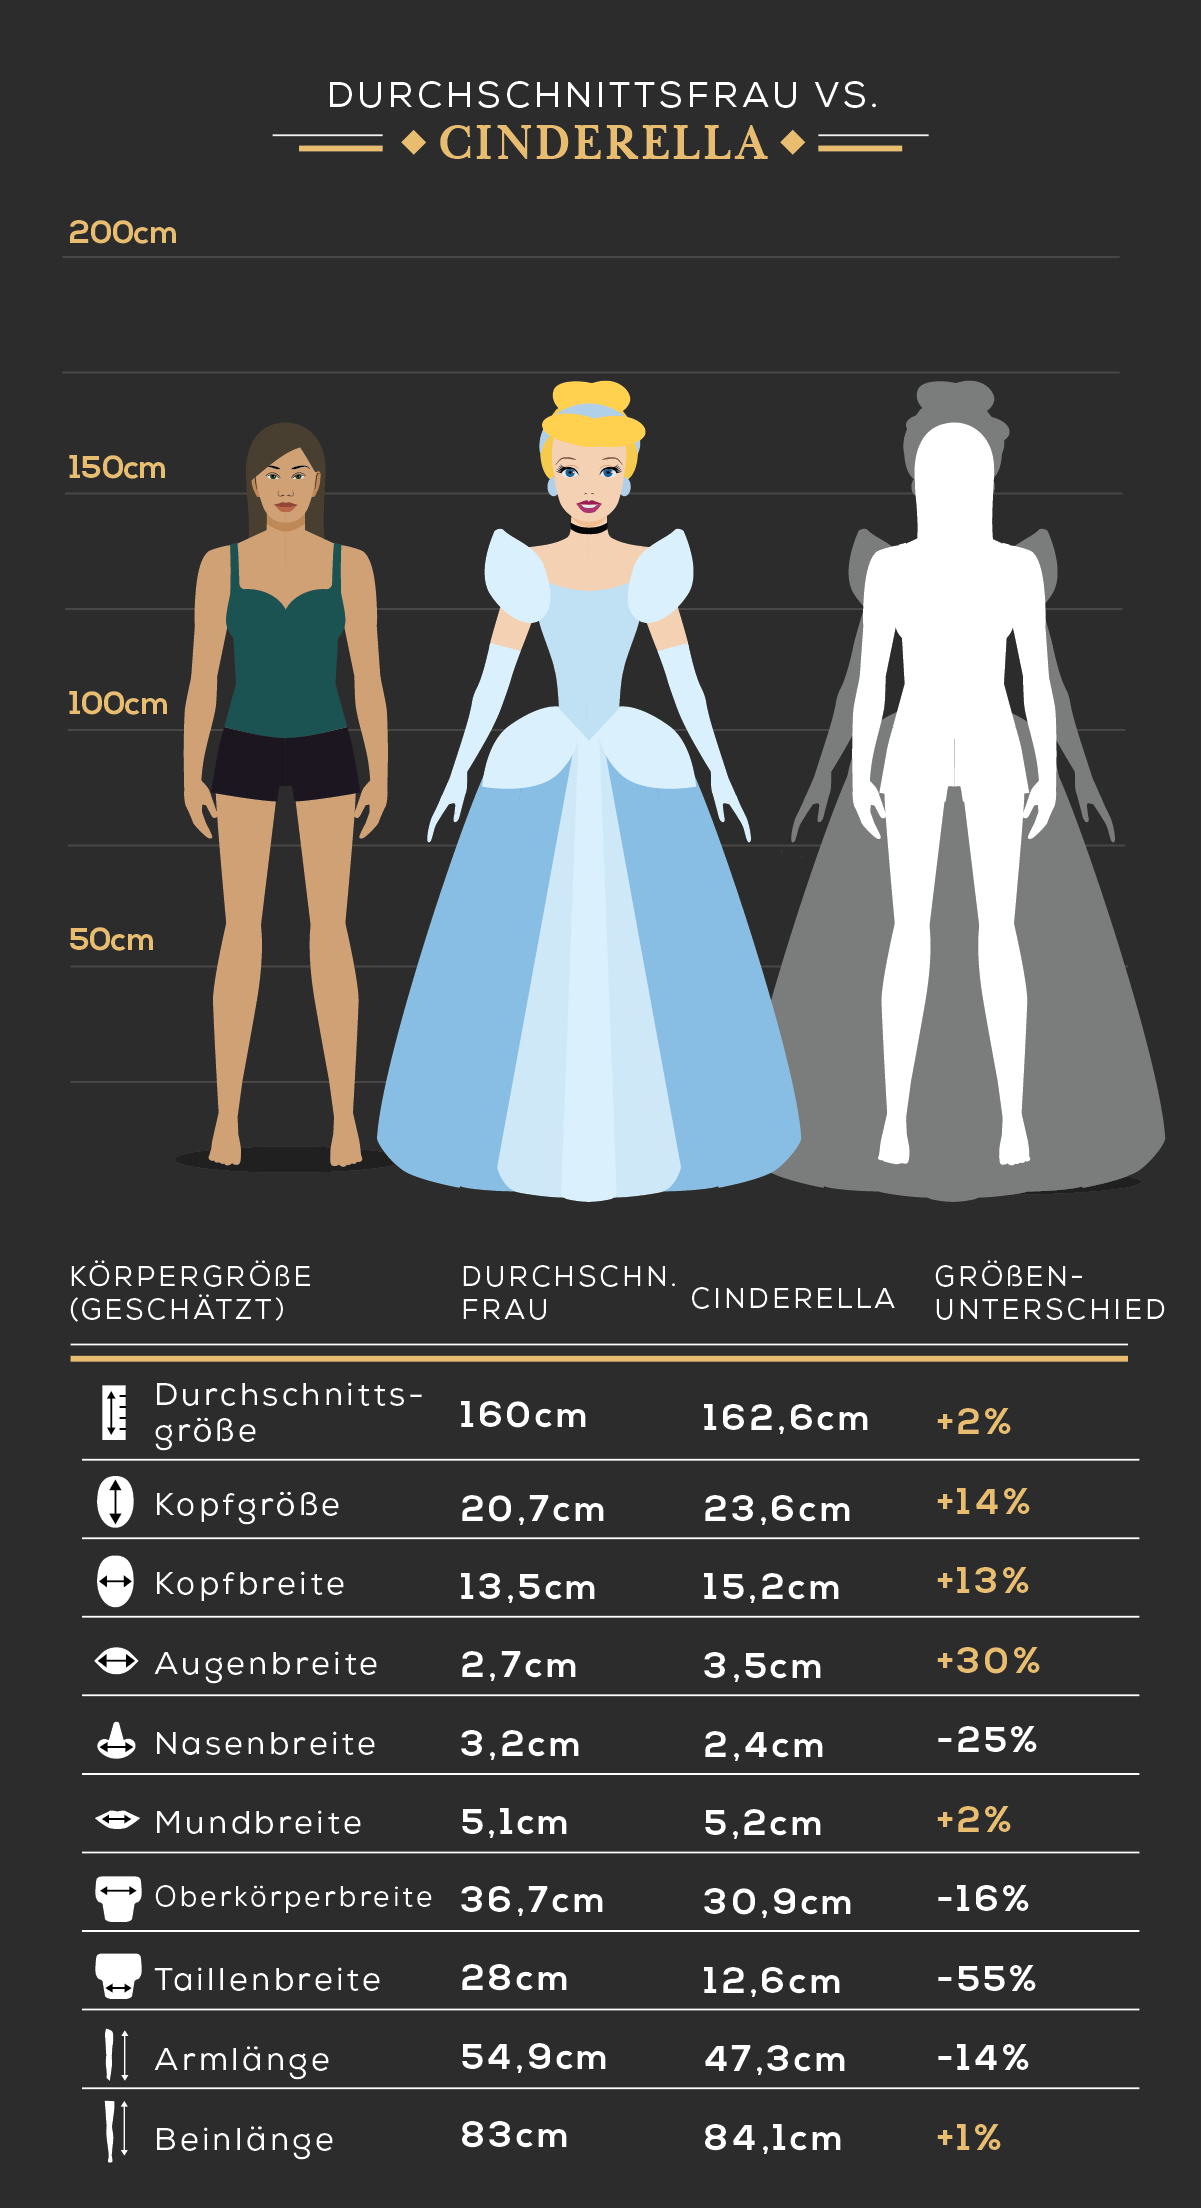 Körpergröße der Durchschnittsfrau vs. Cinderella